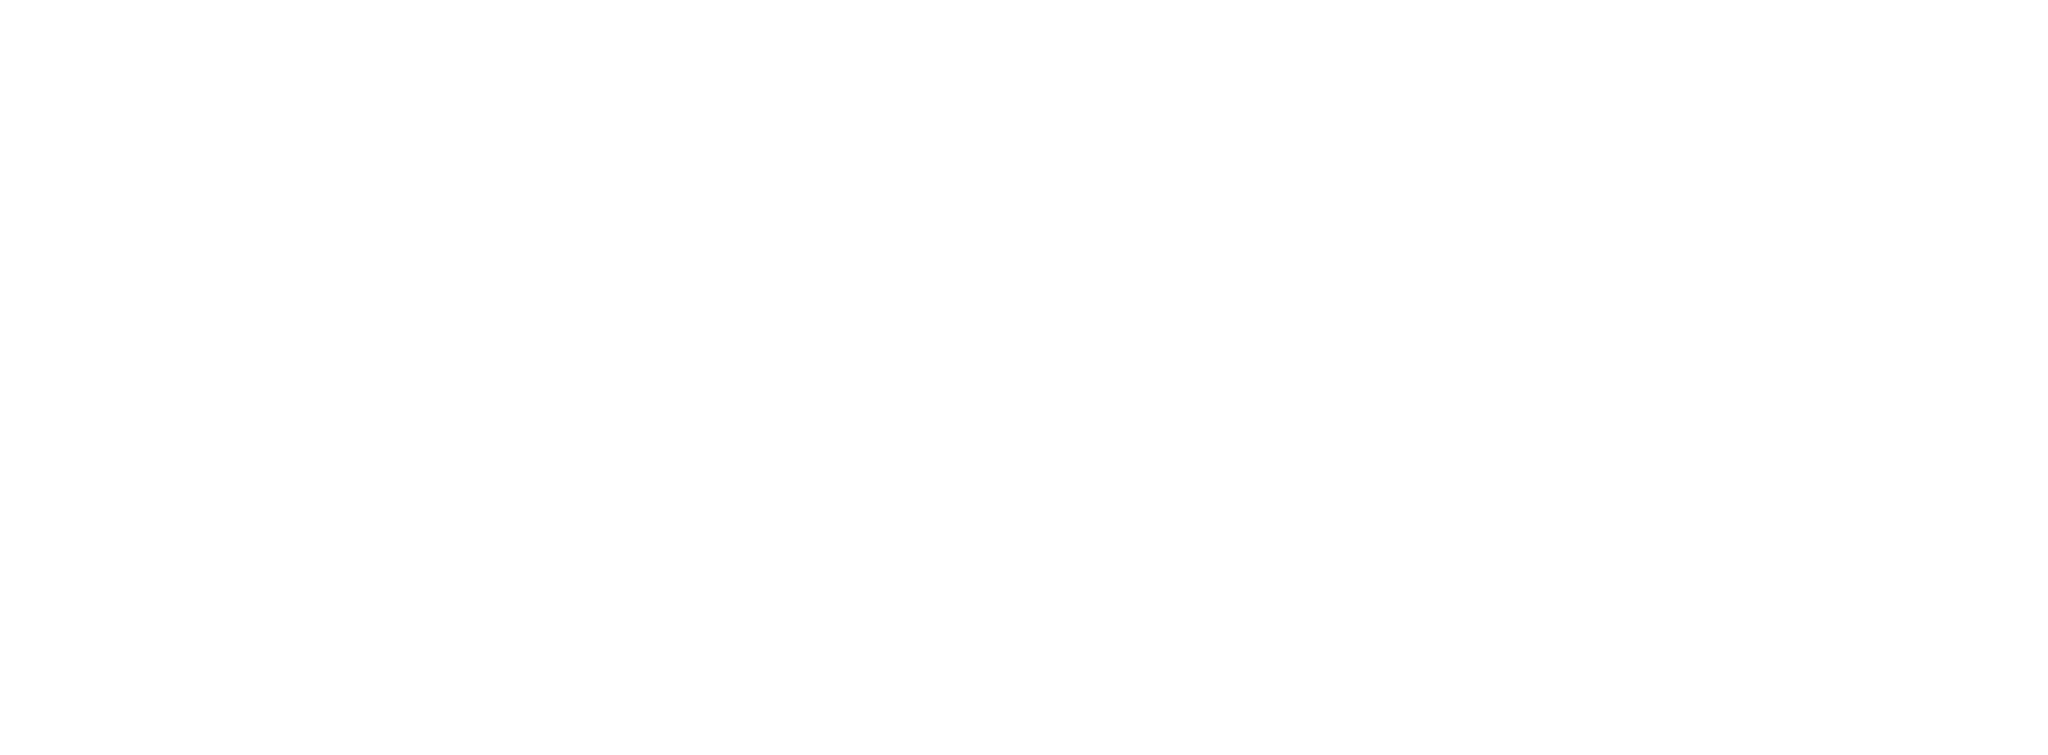 Native Hawaiian & Indigenous Rights | Kai Kahele